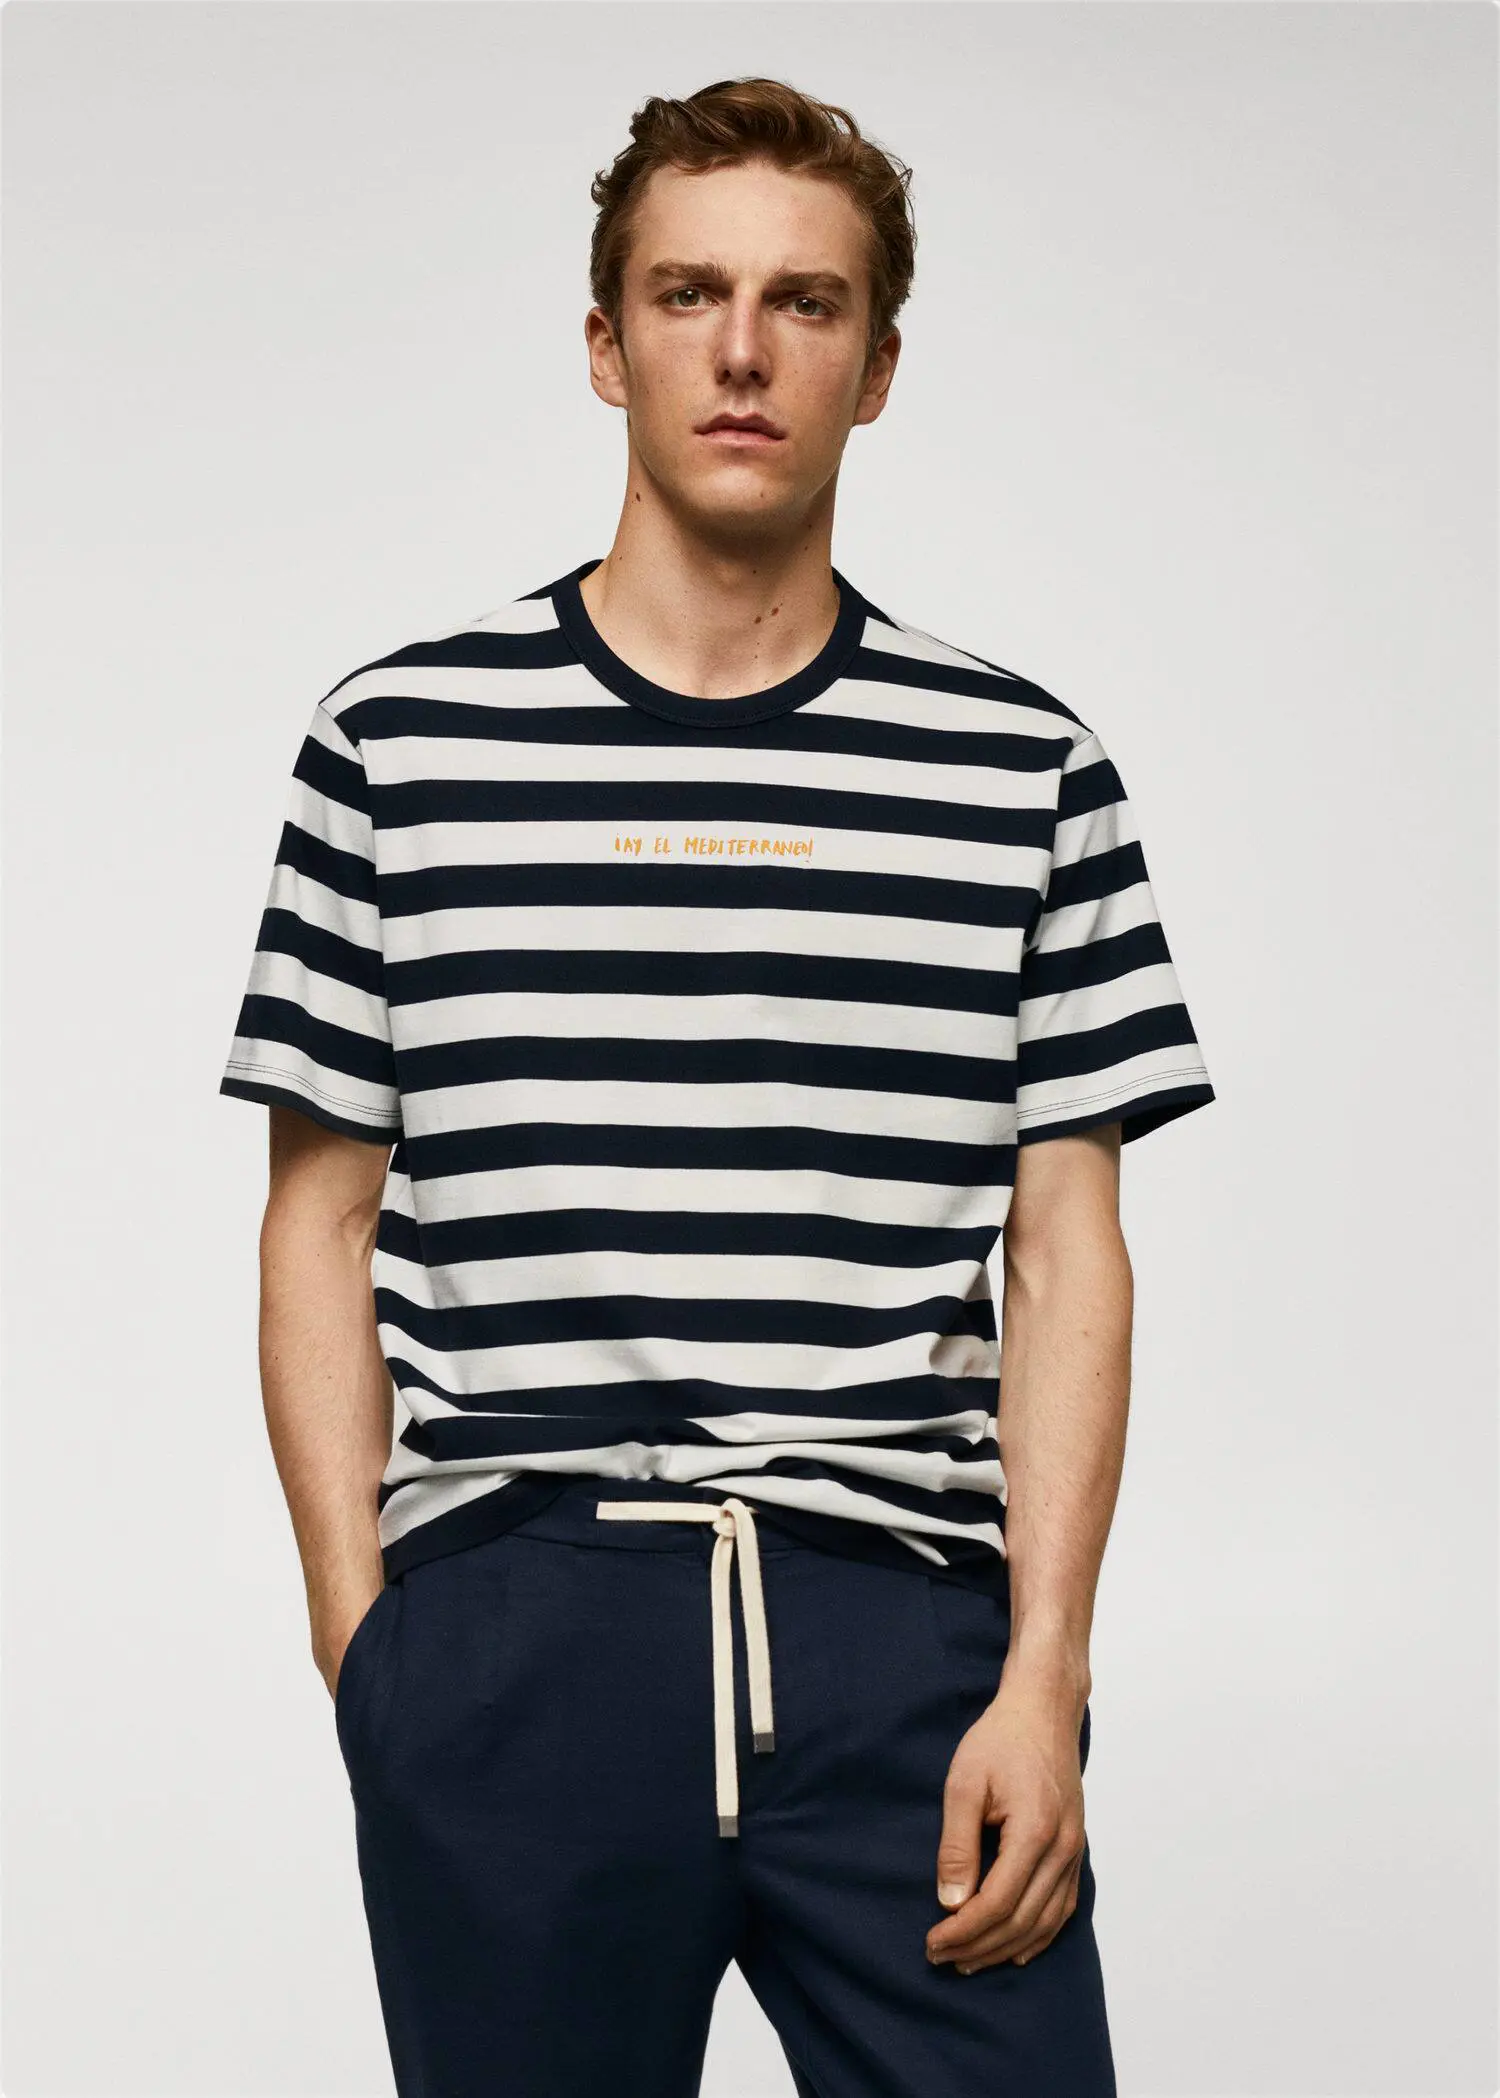 Mango Adriana Eskenazi x Mango t-shirt. a young man wearing a striped t-shirt. 